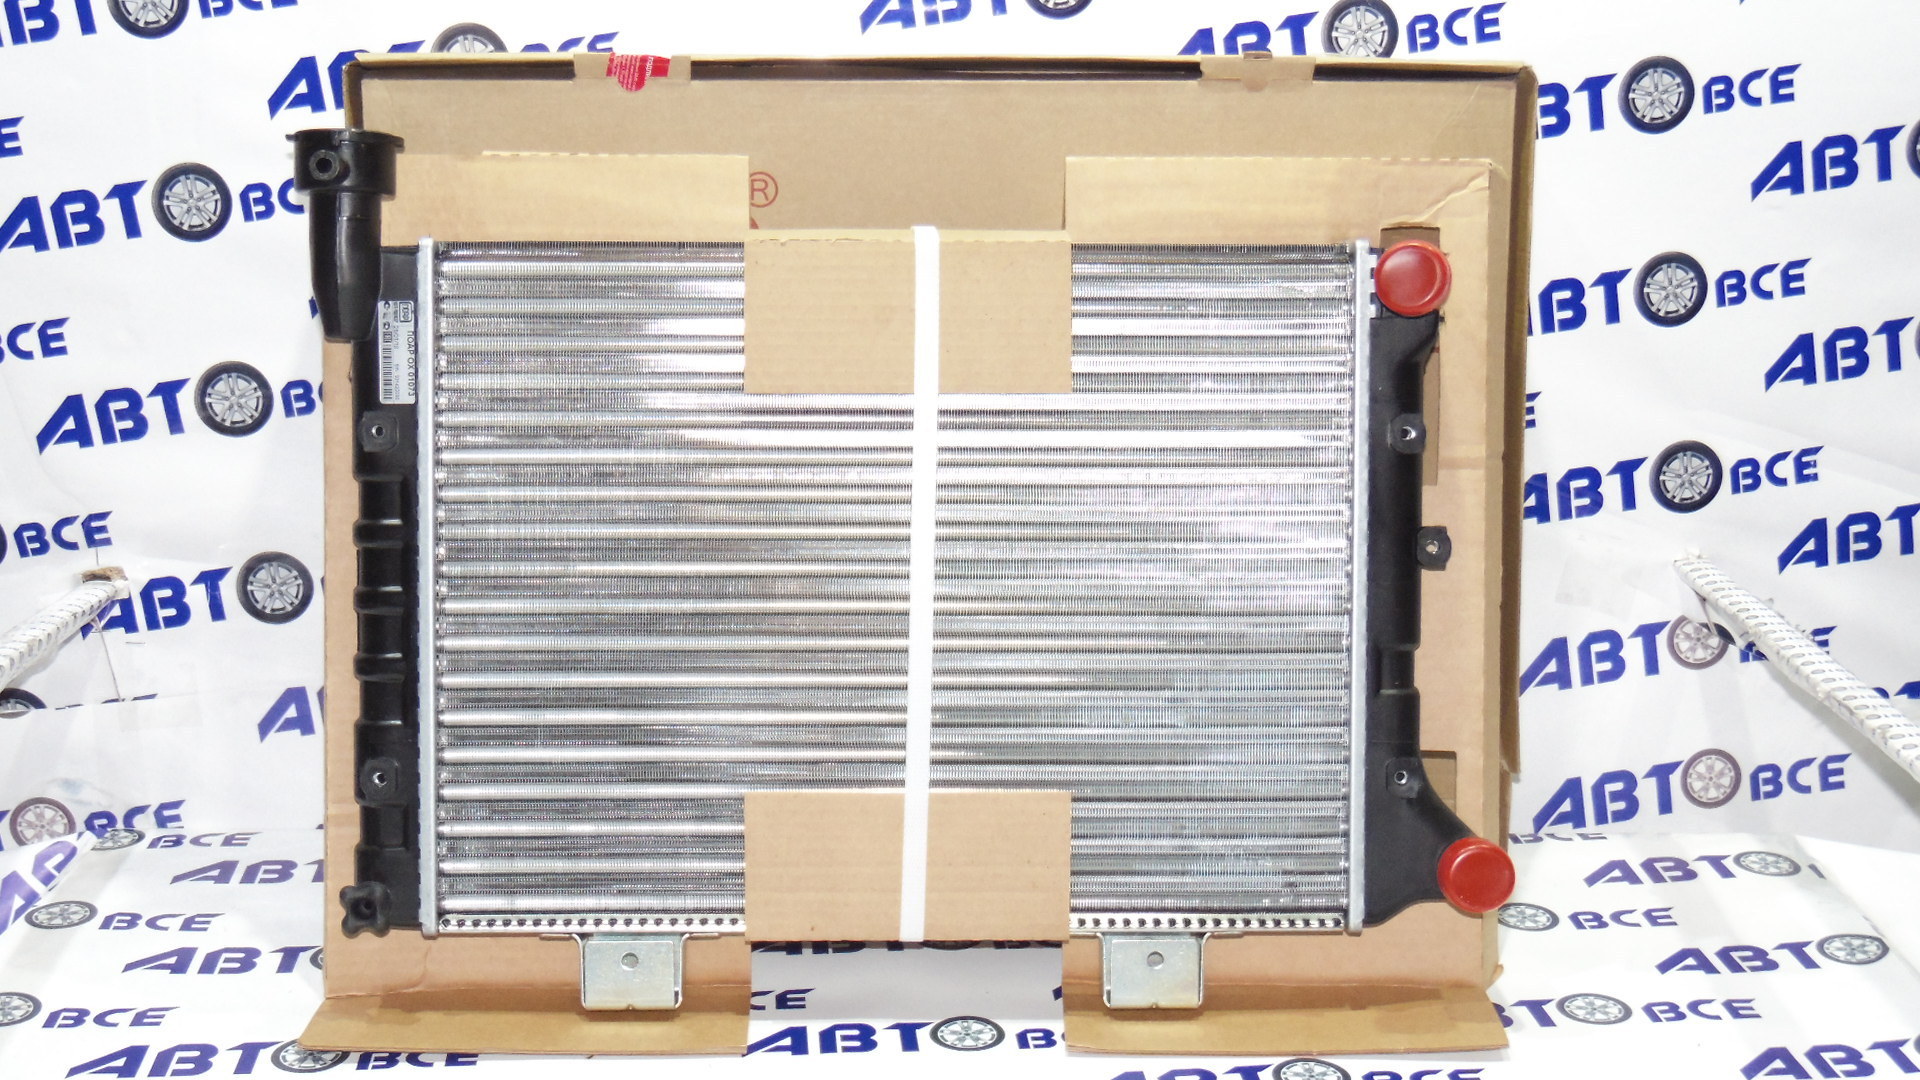 Радиатор основной (охлаждение) ВАЗ-21073 инж. с пробкой Авто-Радиатор